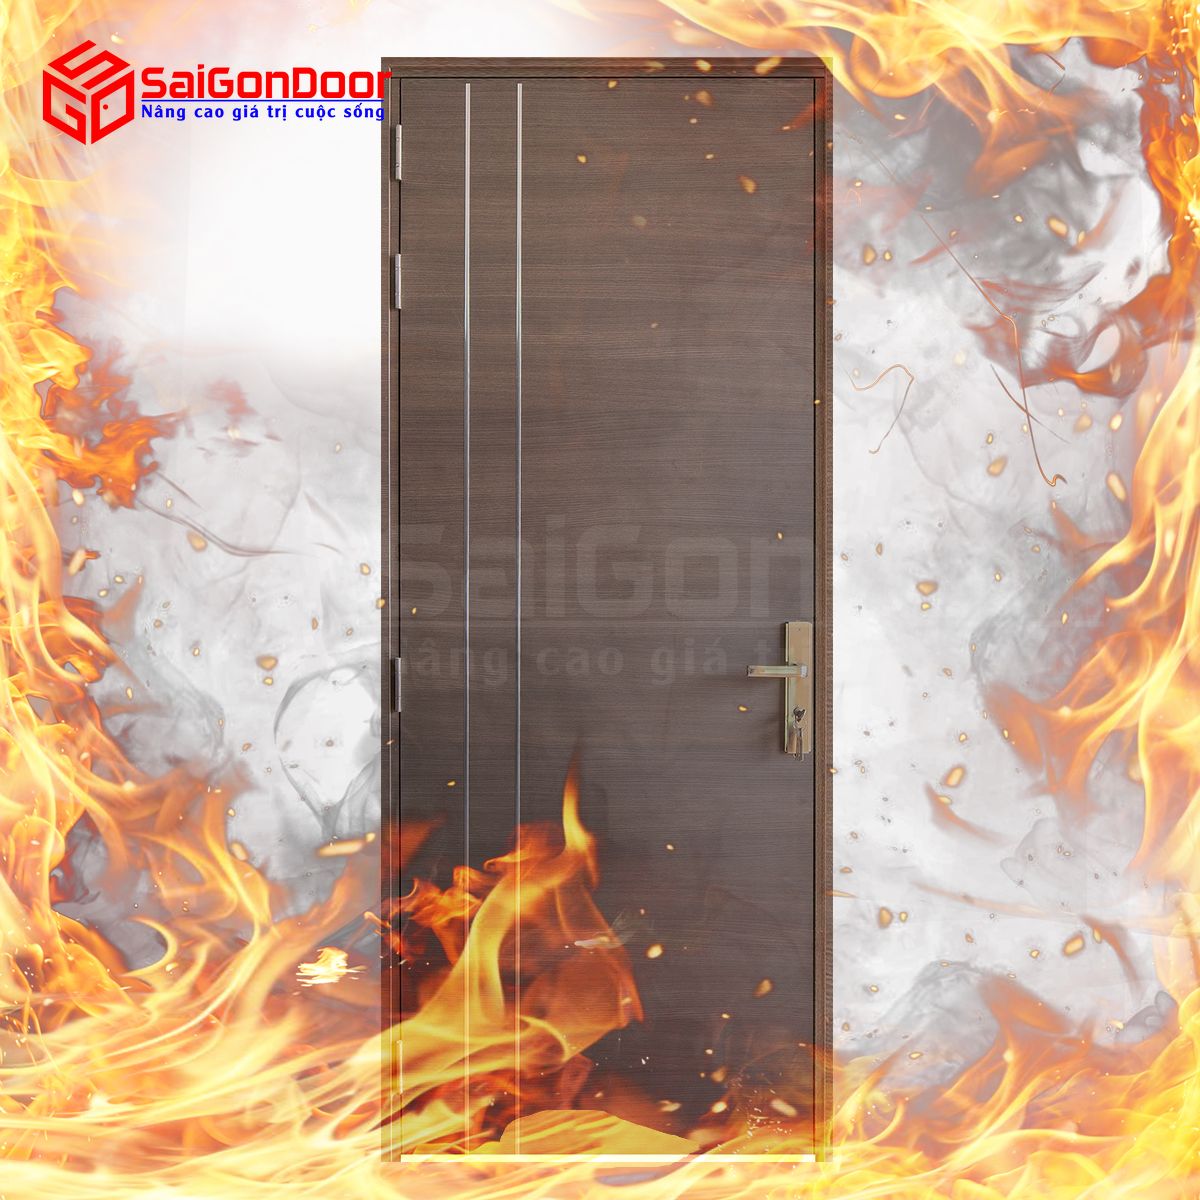 Cửa gỗ chống cháy giúp ngăn cháy hiệu quả đảm bảo an toàn khi có sự cố xảy ra